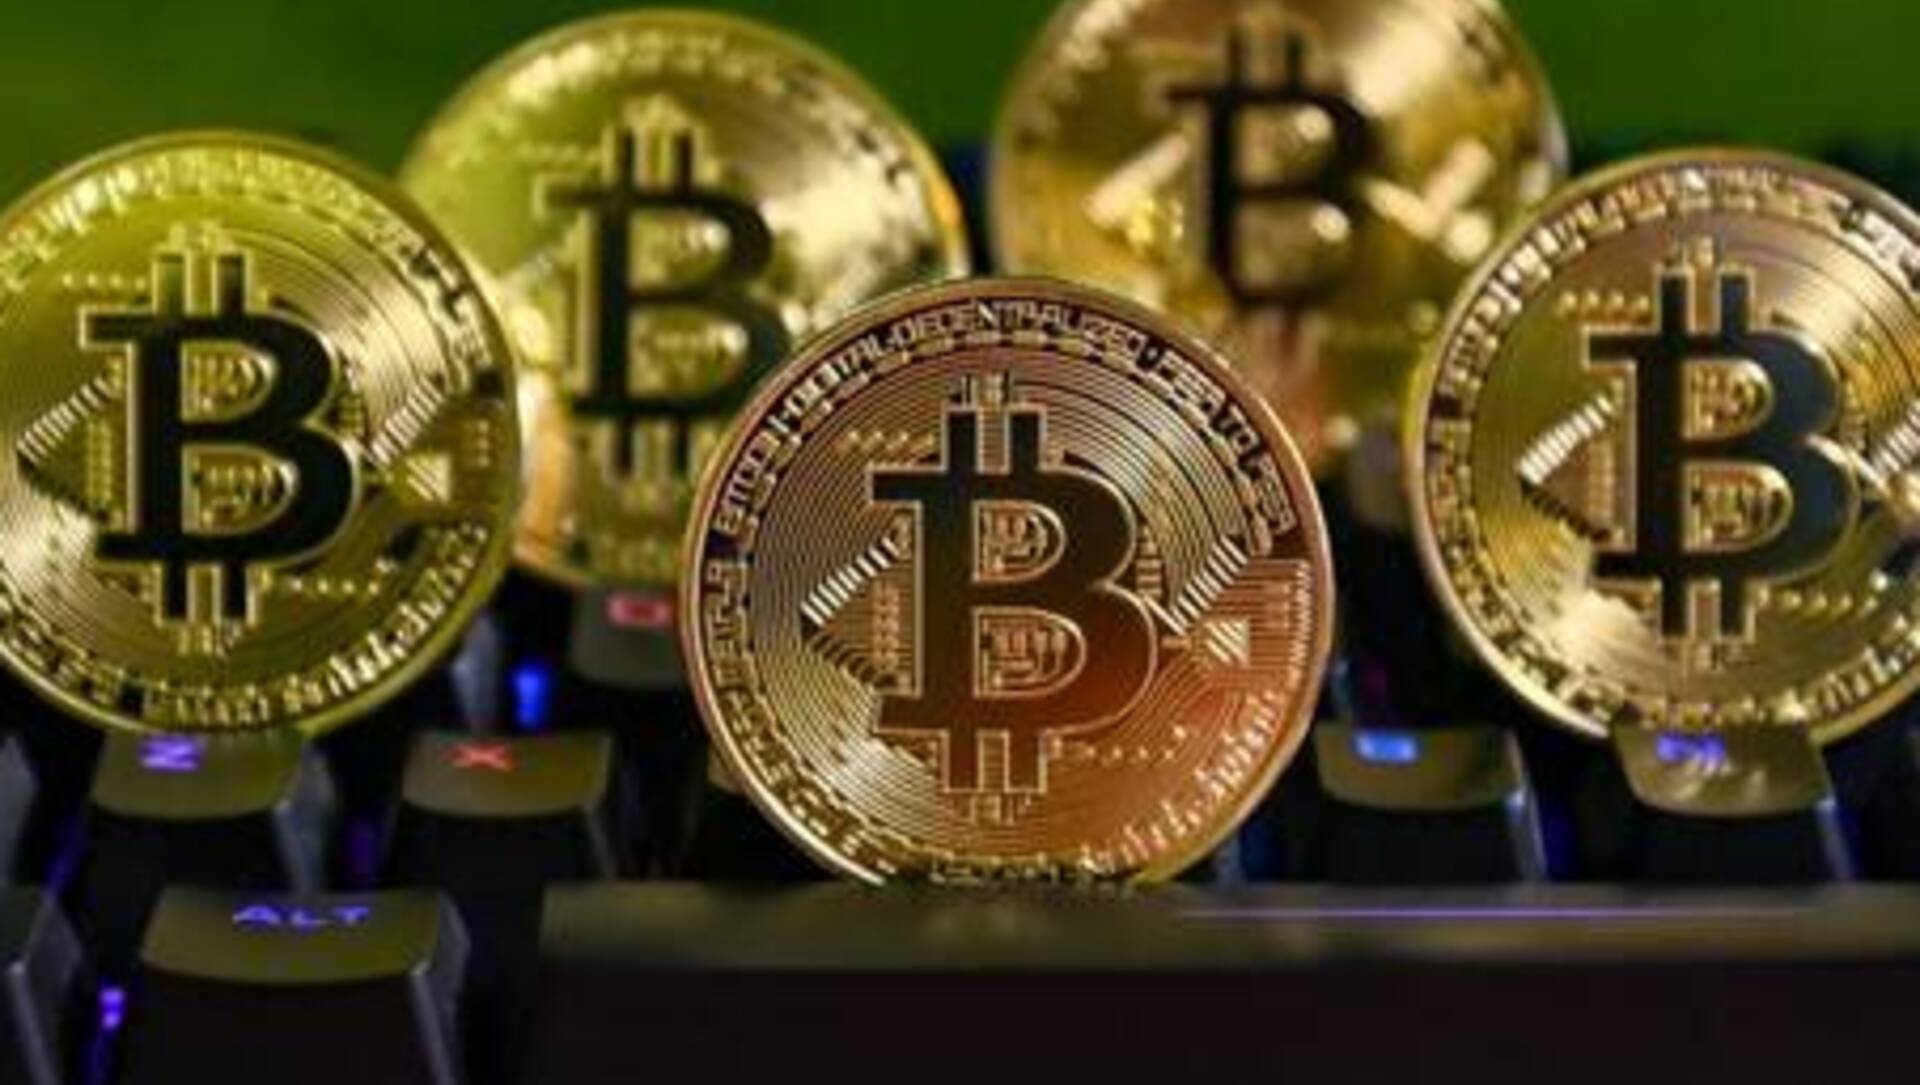 Crollo di Bitcoin nei 7 giorni: acquistare al ribasso o vendere? Alternativa al BTC raccoglie $5M in prevendita